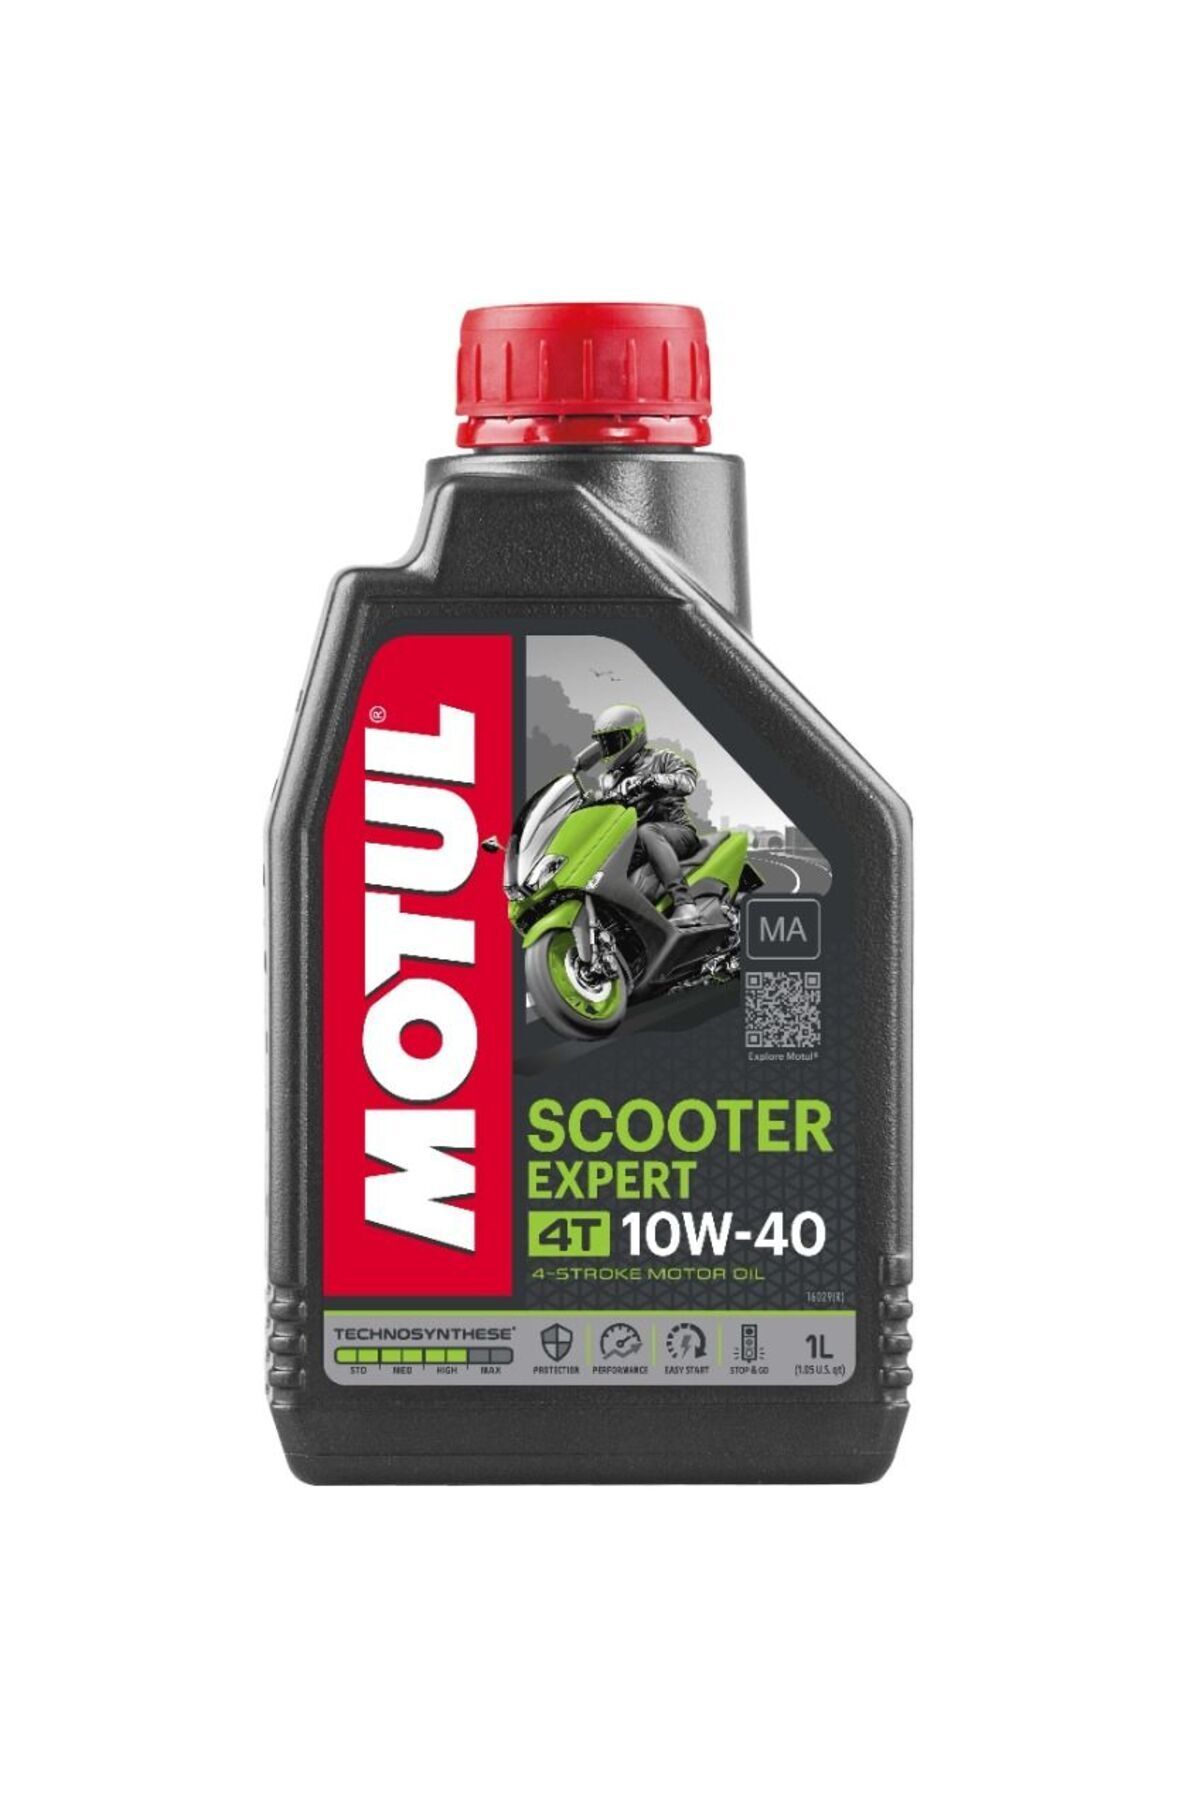 MotulScooterExpert10w-40